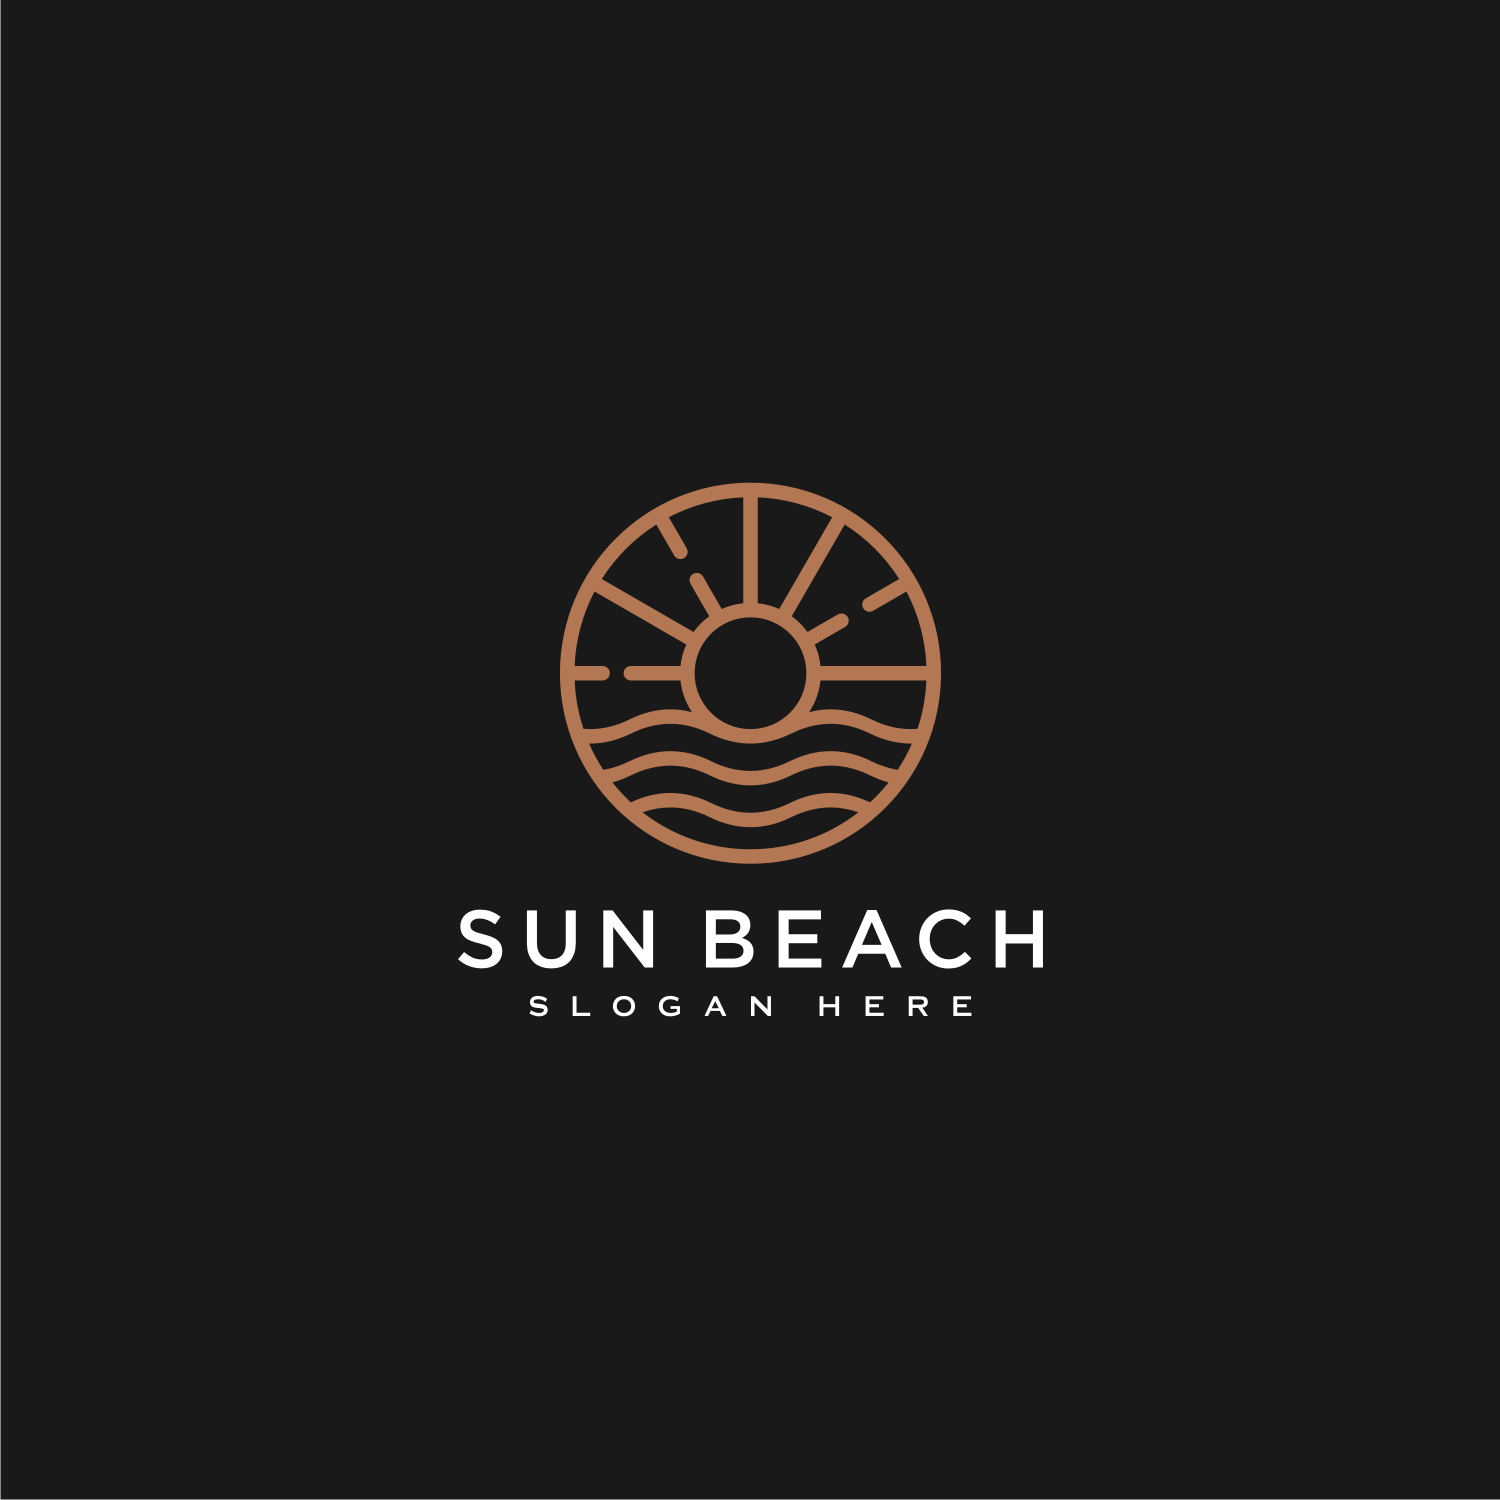 Sun Beach Logo Design Premium Vector Preview Image.